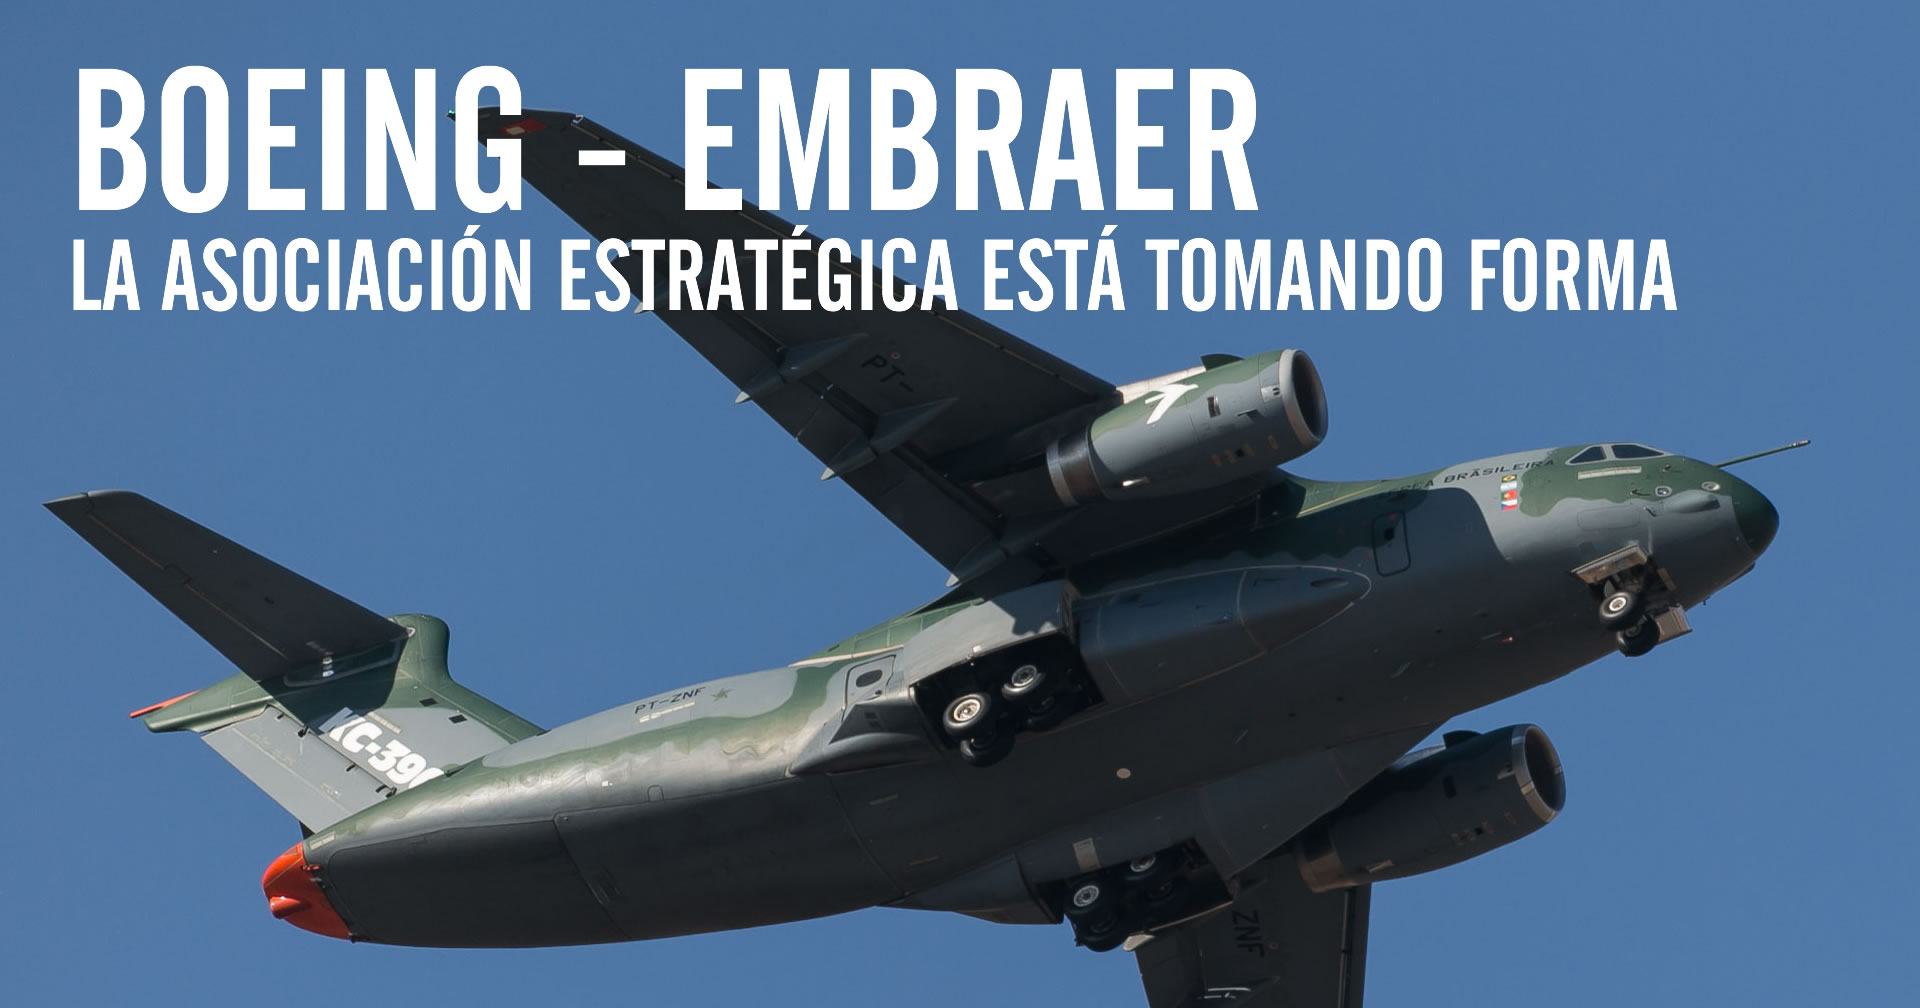 La asociación estratégica de Boeing-Embraer está tomando forma